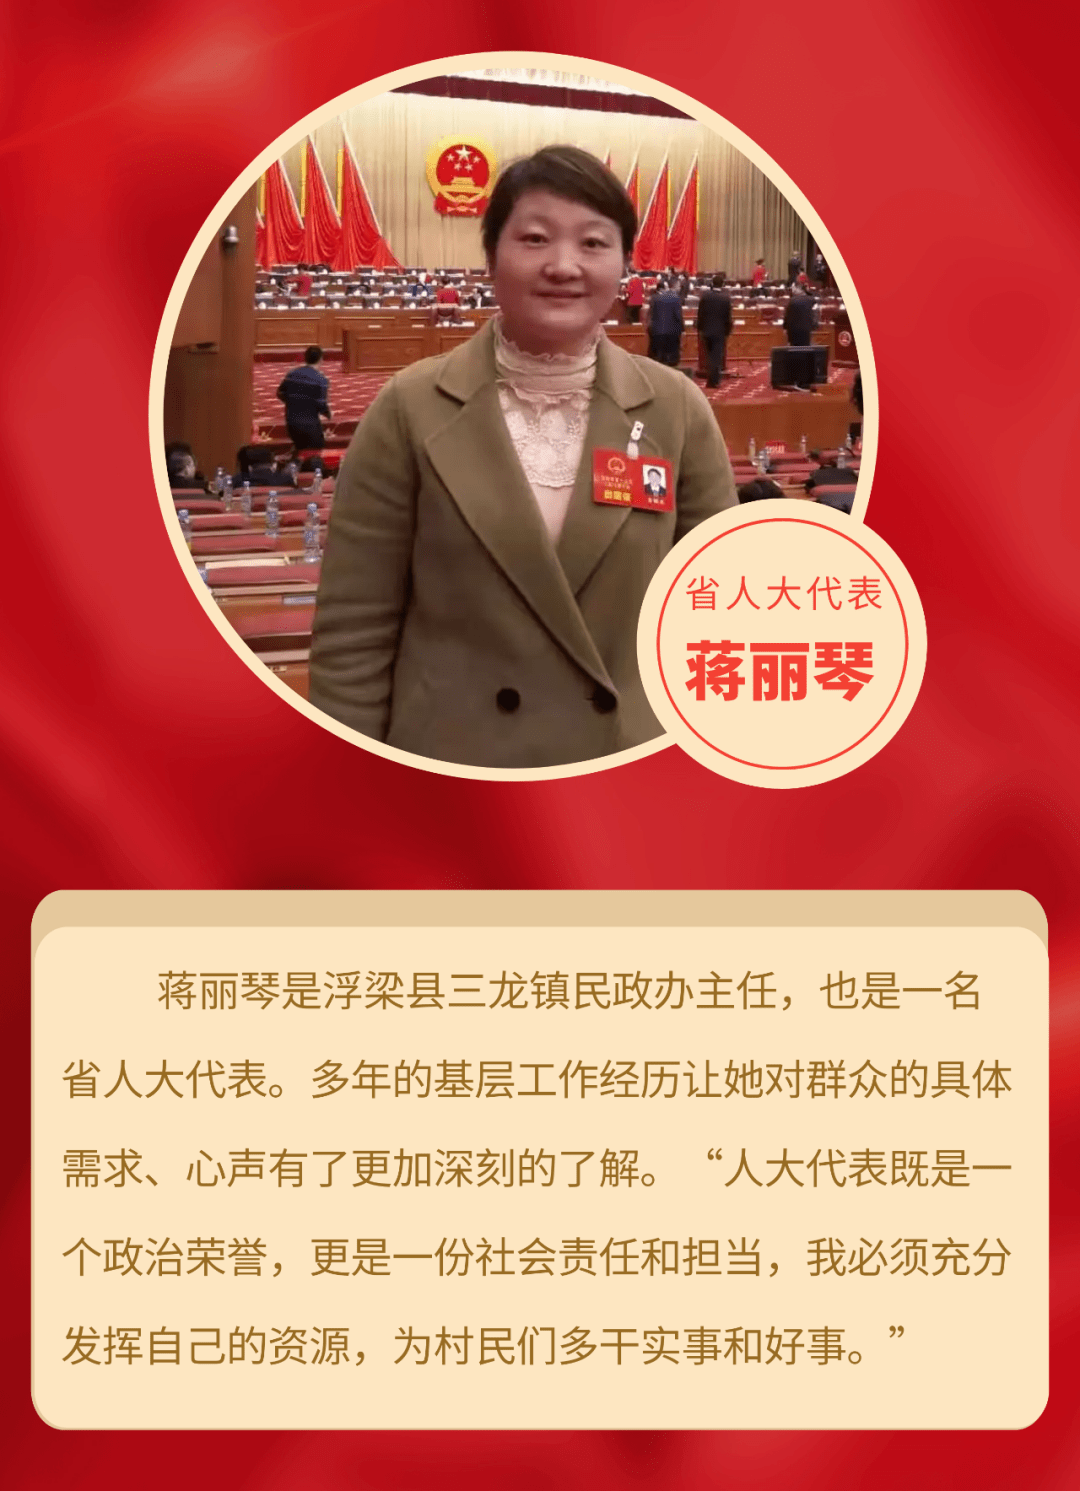 当选省人大代表之前,蒋丽琴一直在社区工作